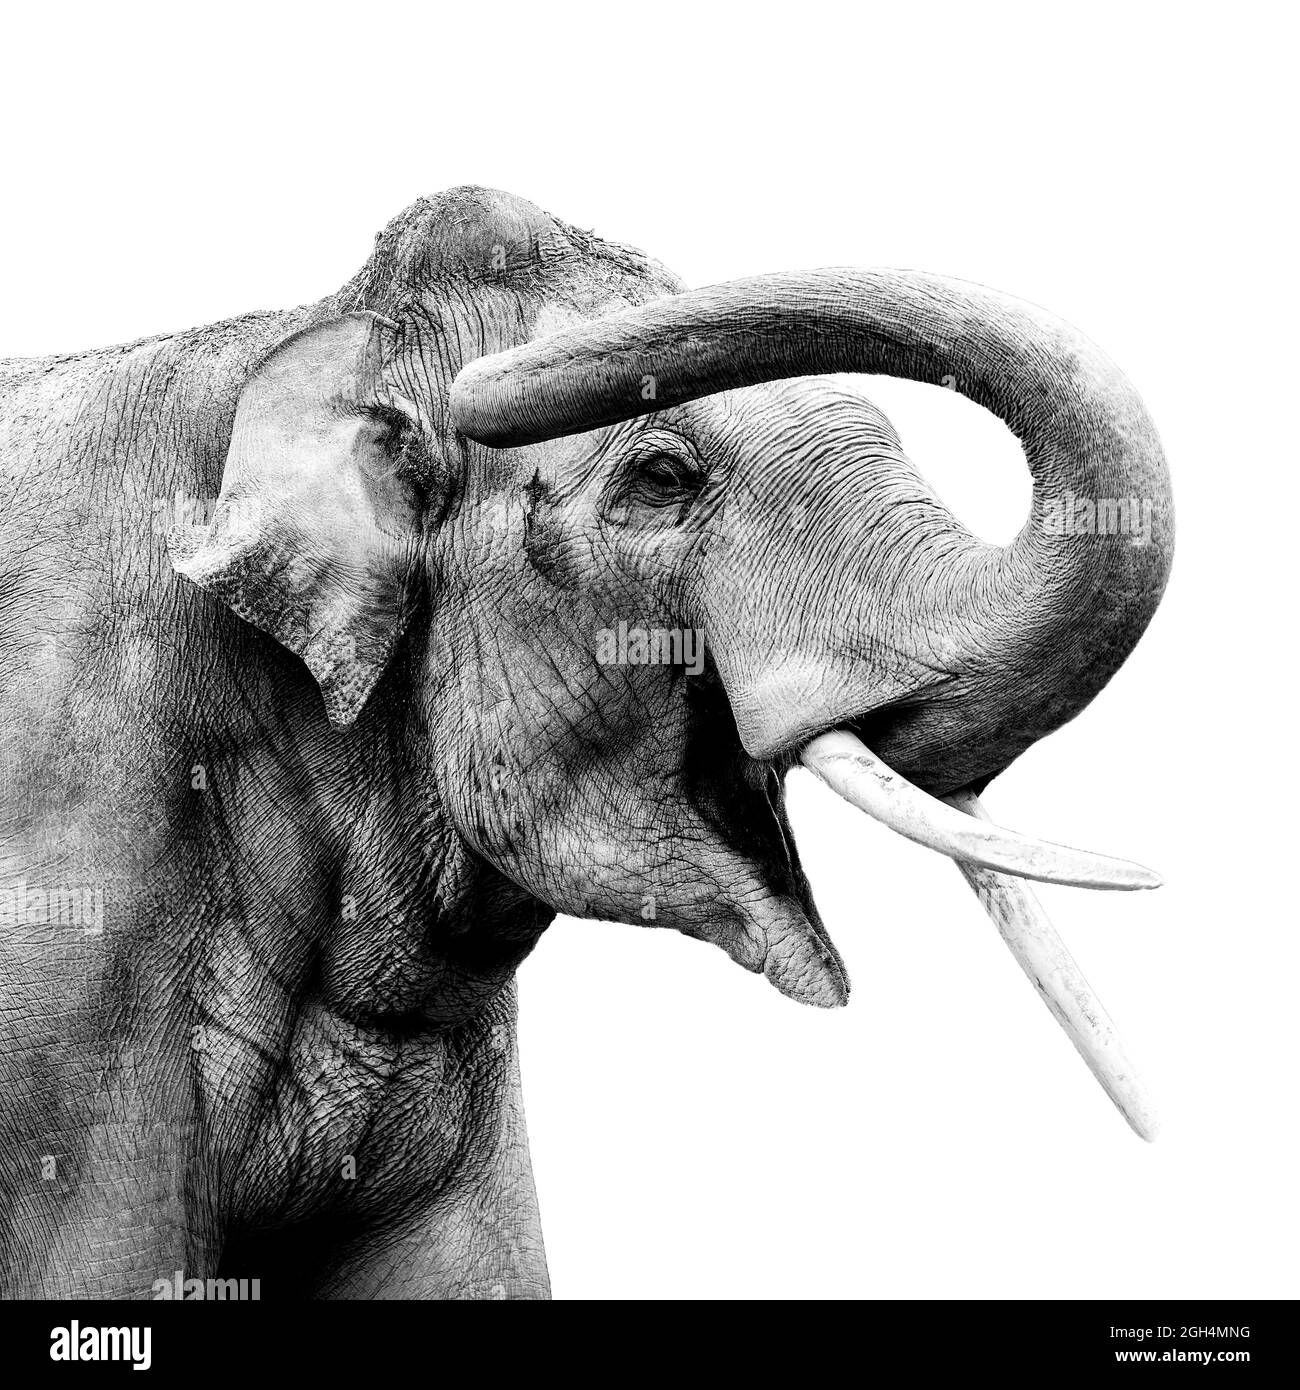 Big elephant smiling Stock Photo